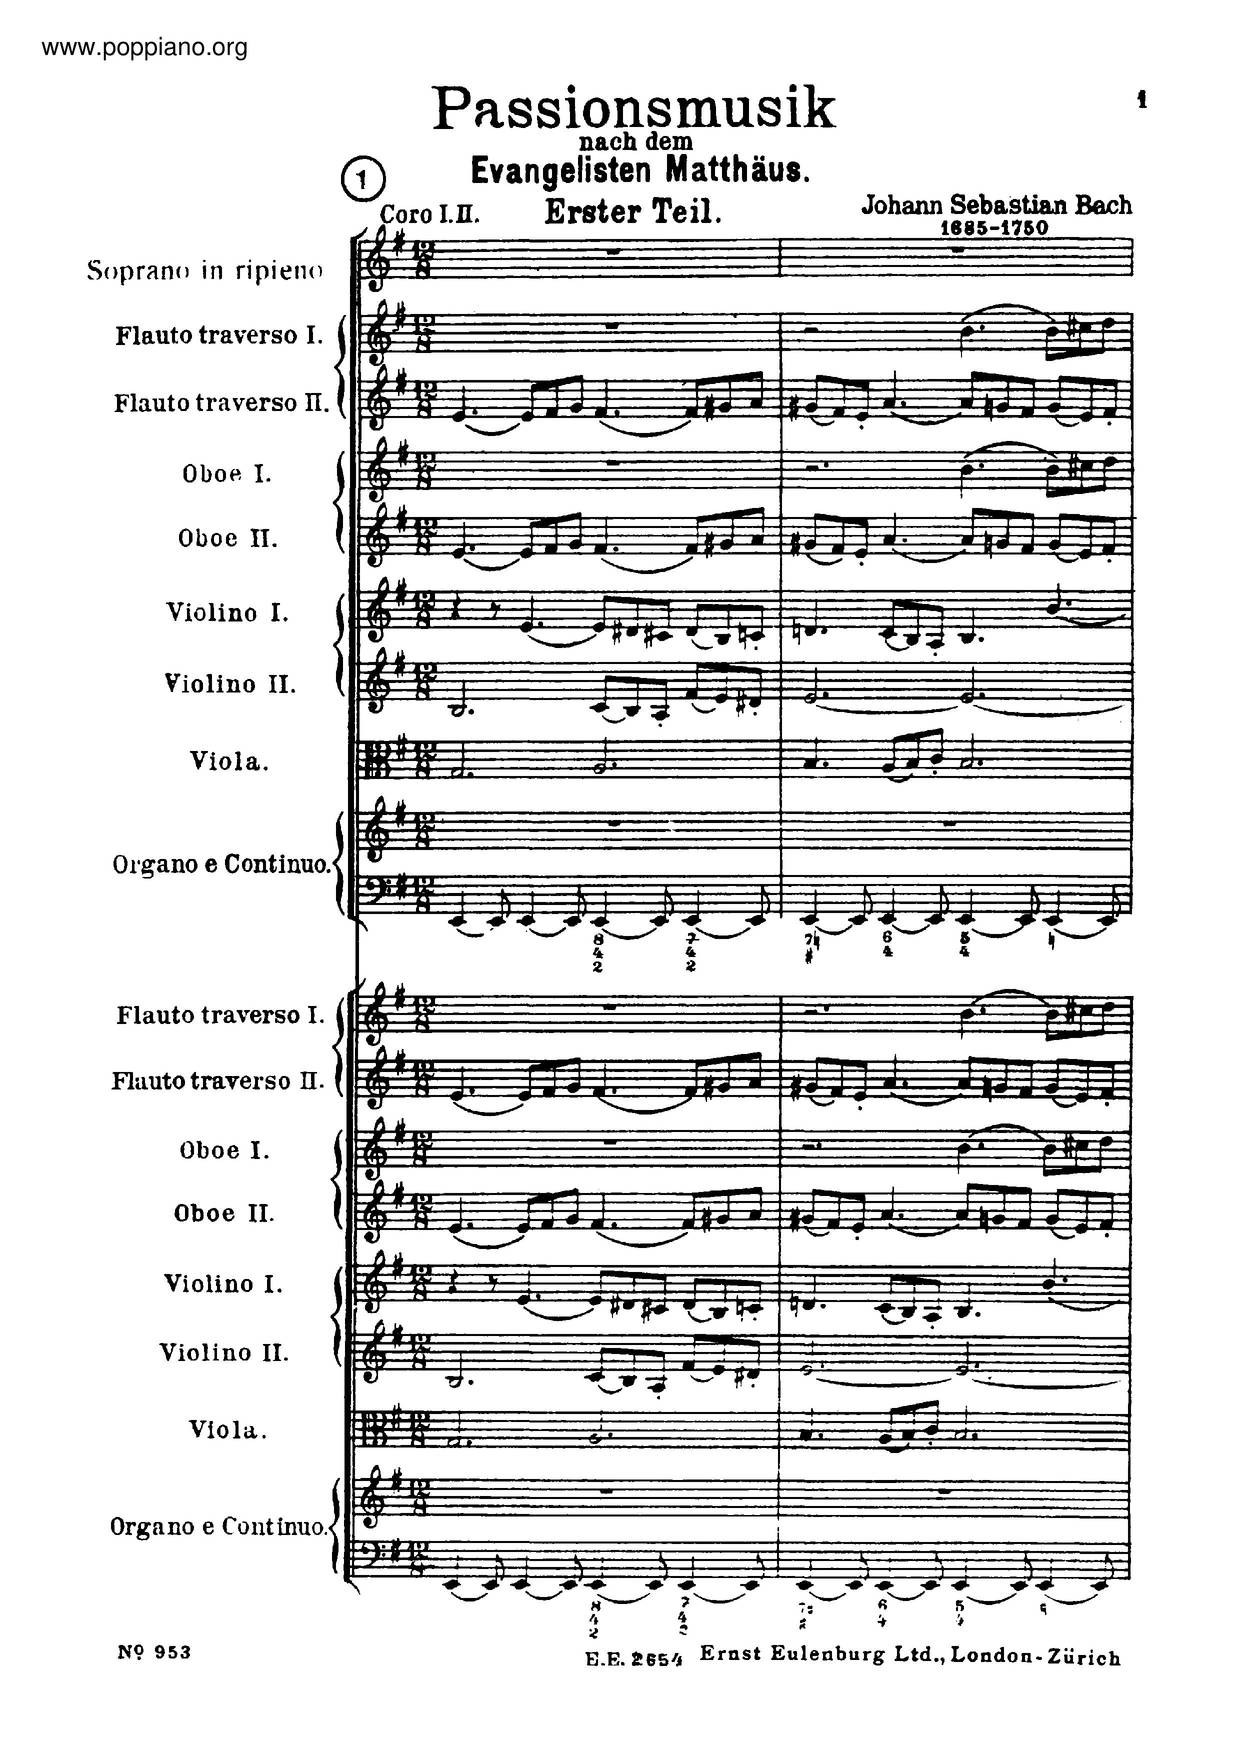 St. Matthew's Passion, BWV 244琴谱